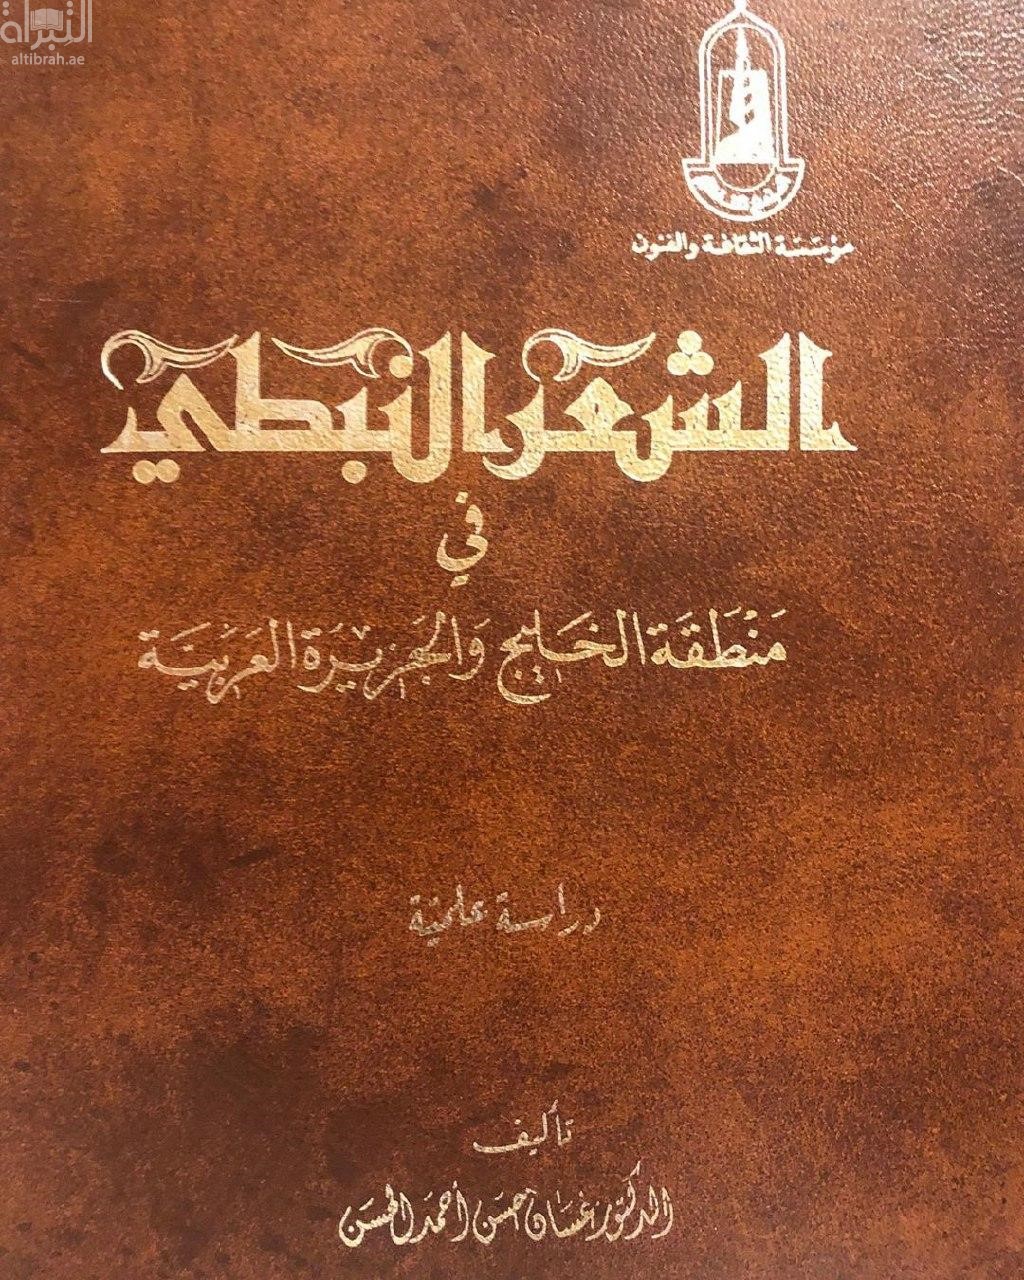 الشعر النبطي في منطقة الخليج و الجزيرة العربية : دراسة علمية